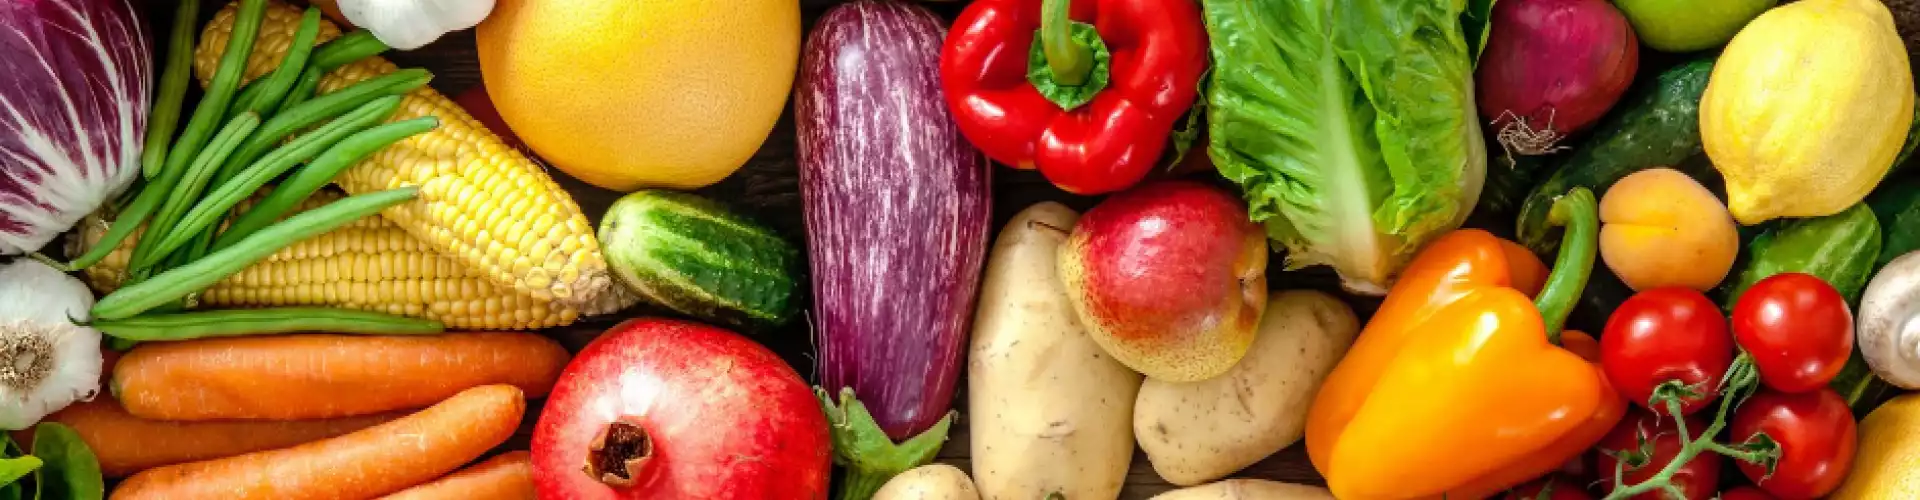 16 種使用蔬菜的方法